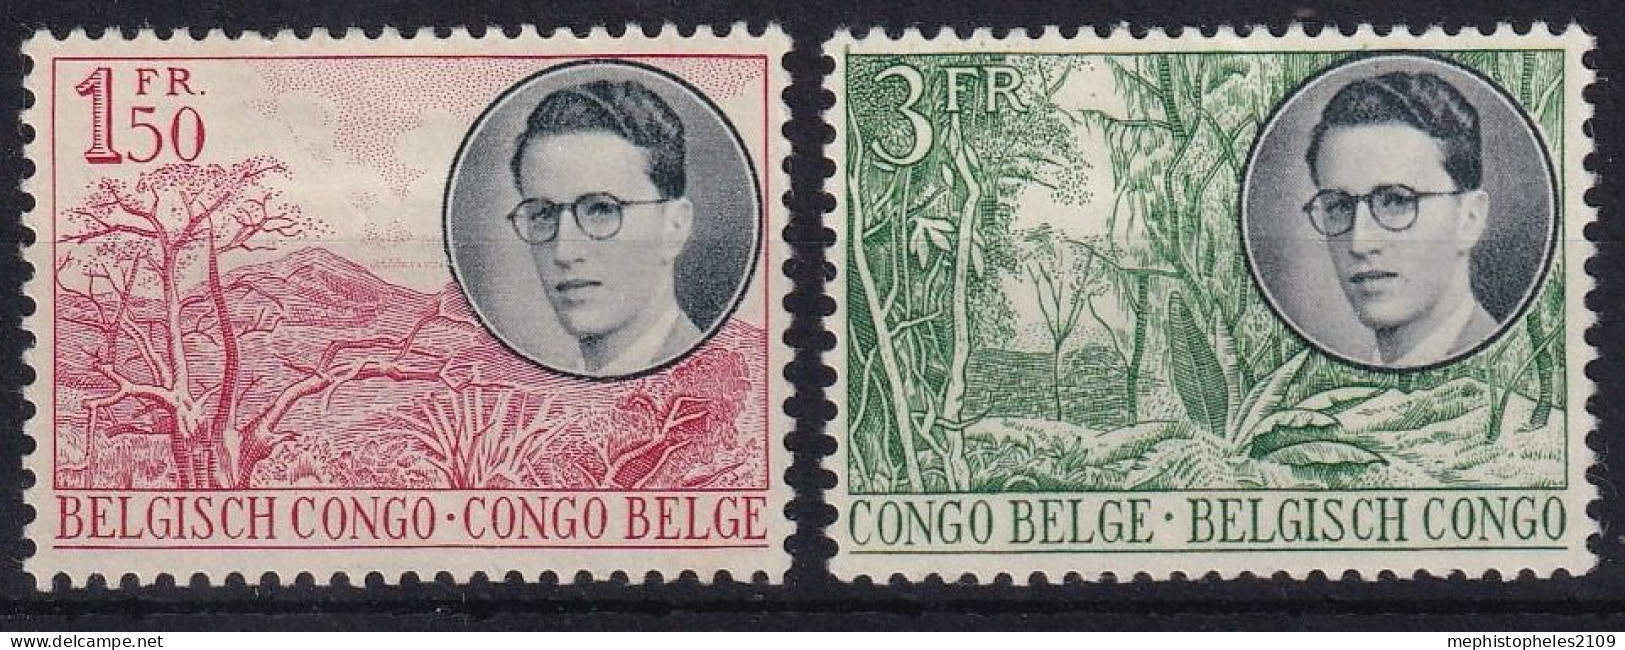 BELGISCH-CONGO 1955 - MLH - Mi 322, 327 - Nuevos